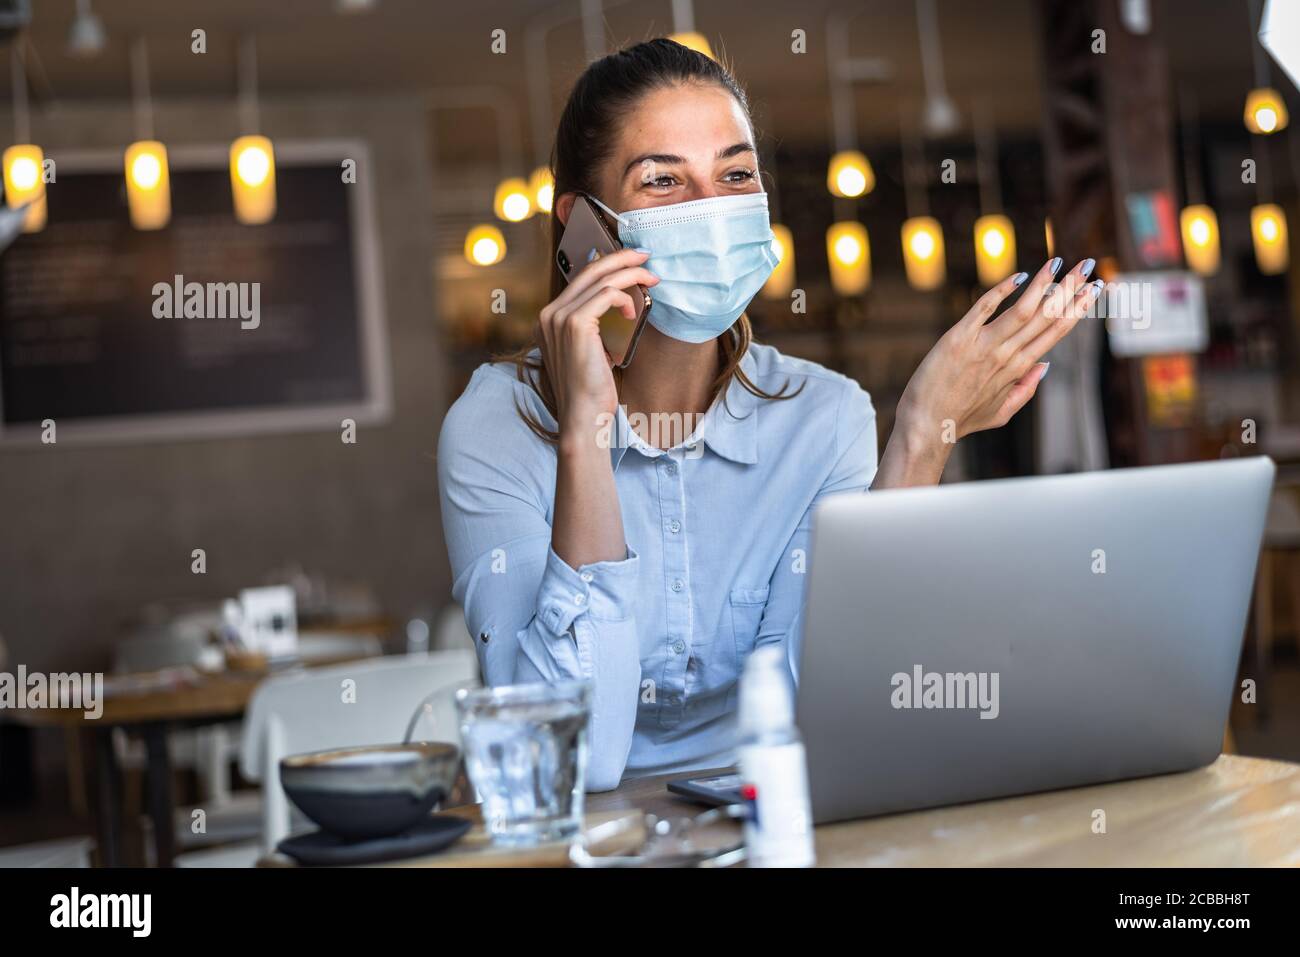 Portrait d'une jeune femme d'affaires, portant un masque tout en parlant sur un téléphone portable. Concept de nouveau mode de vie normal pendant la pandémie de Covid-19. Banque D'Images